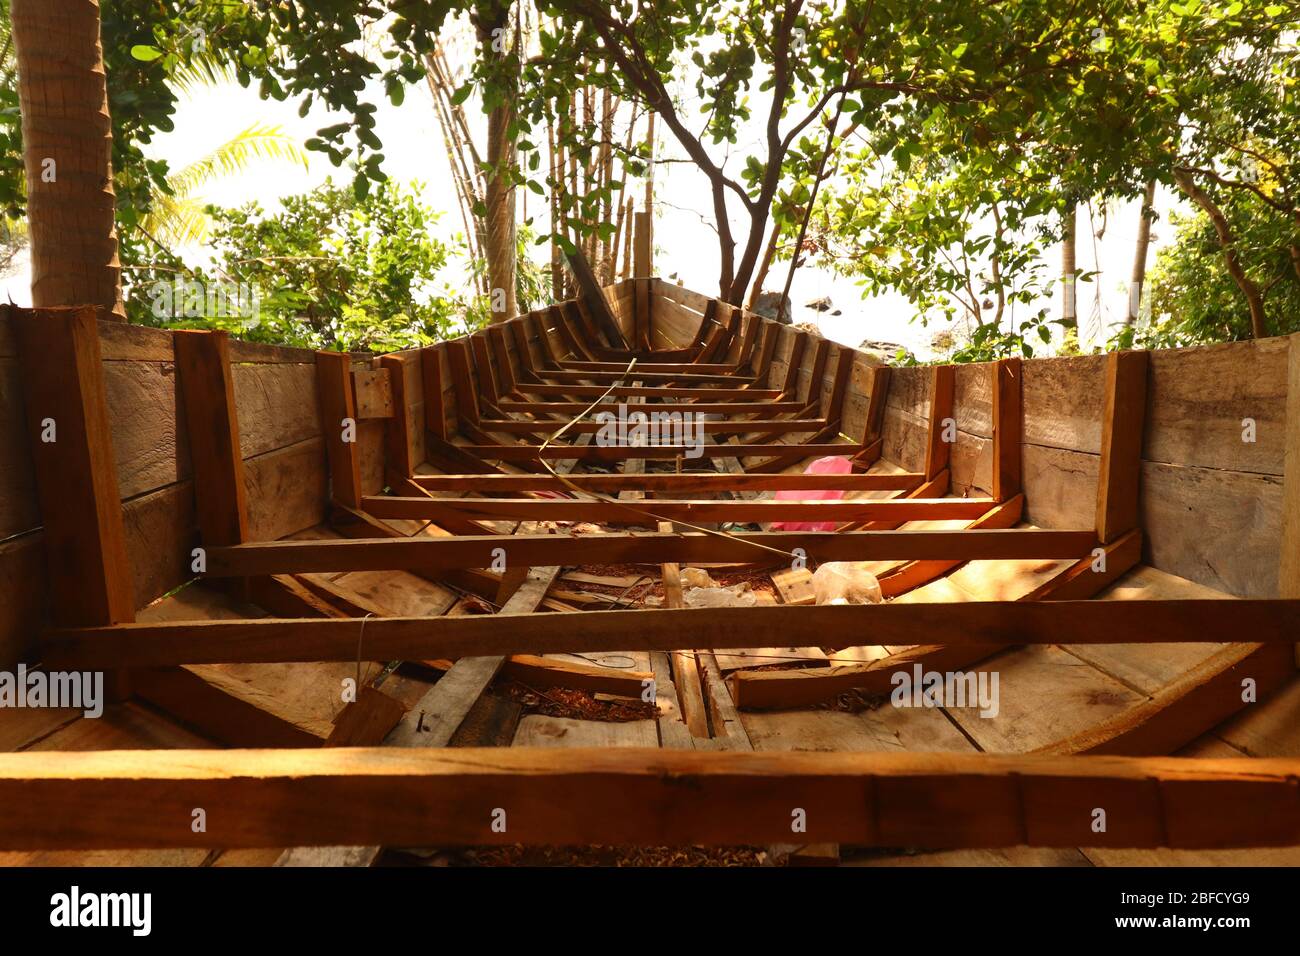 Un bateau traditionnel cambodgien ou khmer appelé bon Om Touk étant réparé dans un village insulaire de Koh Rong Banque D'Images